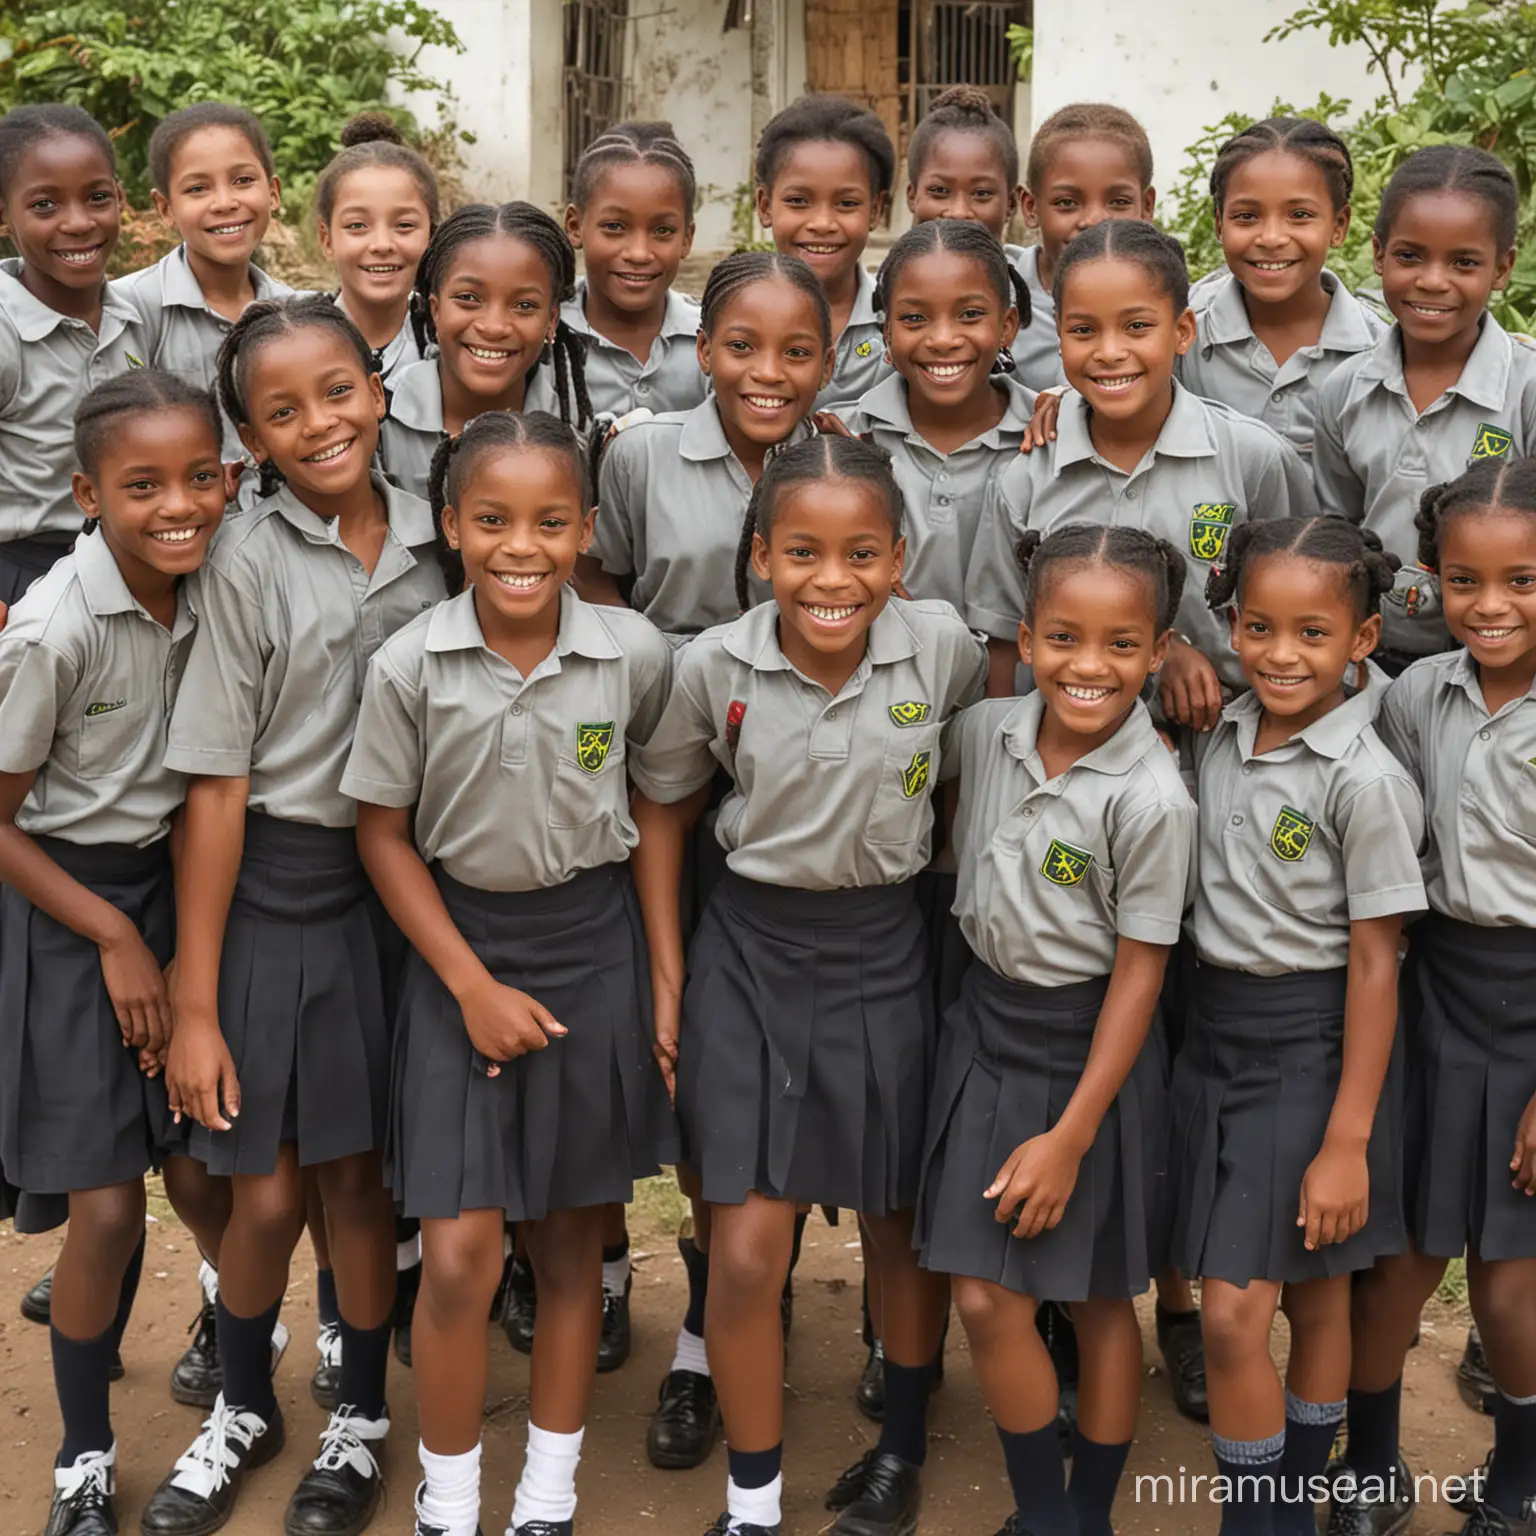 Happy Jamaican School Children in Uniform Smiling Joyful Students in Traditional Dress